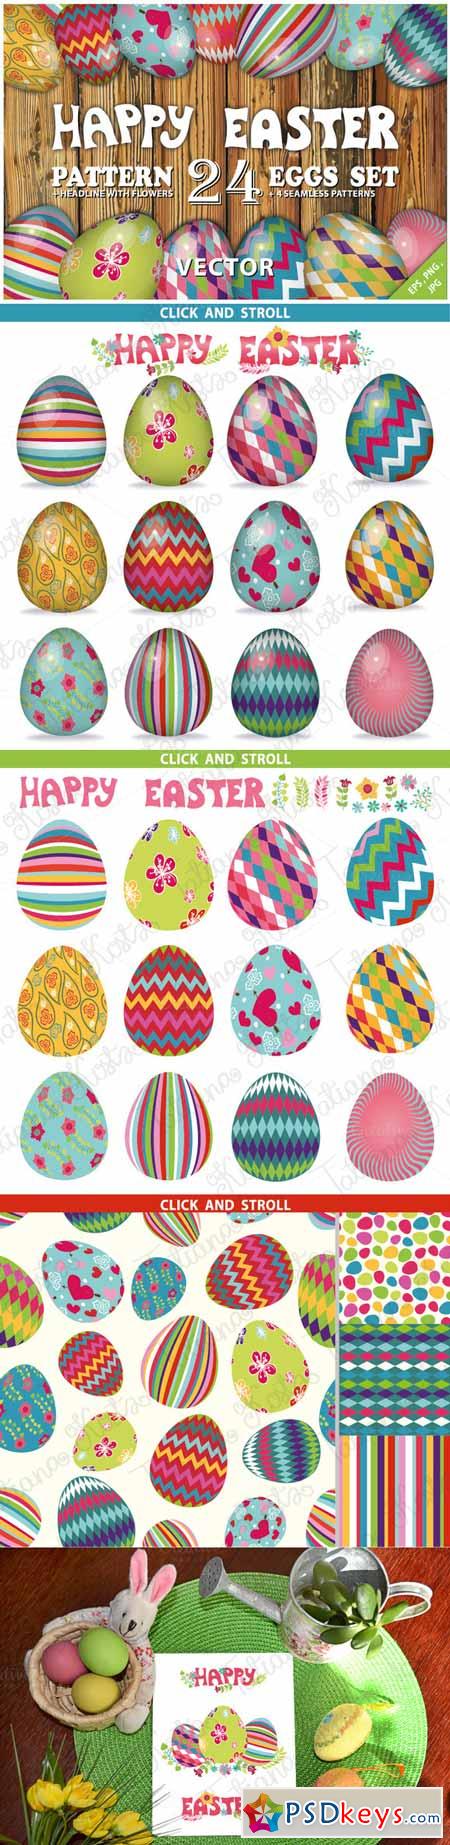 Easter pattern eggs set 01.Vector 223382